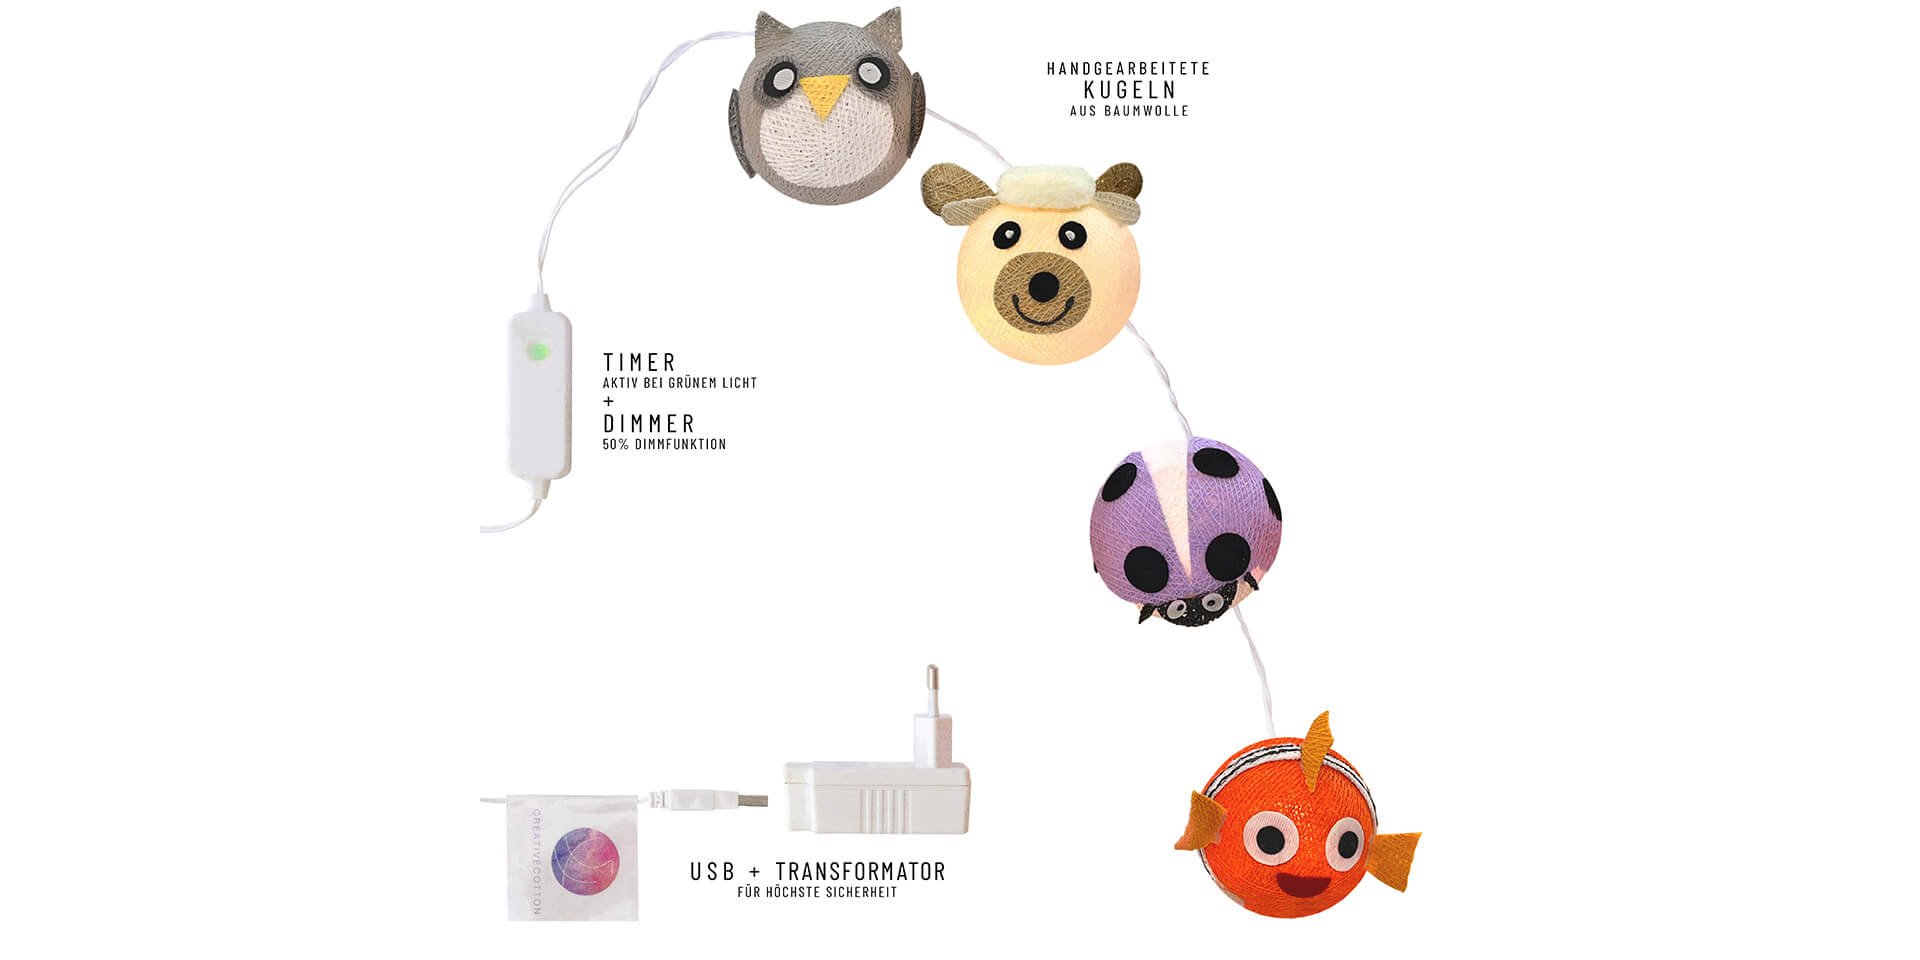 Übersicht der LED Lichterkette mit bunten Tieren inklusive Timer und Dimmer